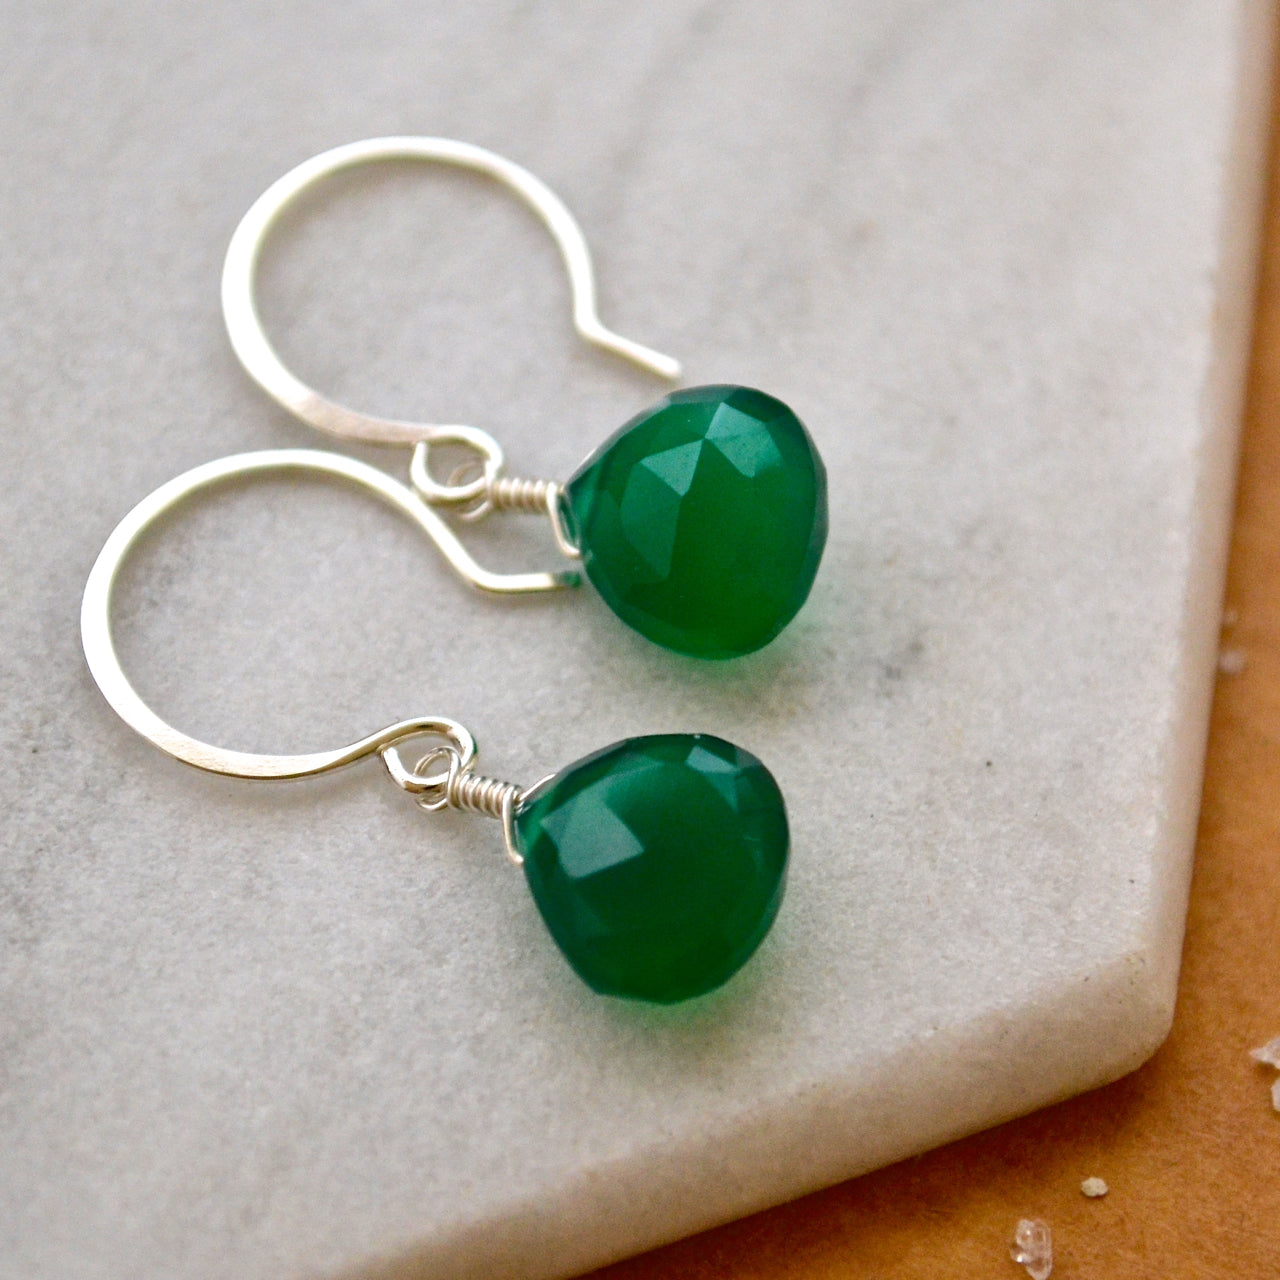 Stunna Earrings - emerald green onyx gemstone drop earrings - Foamy Wader